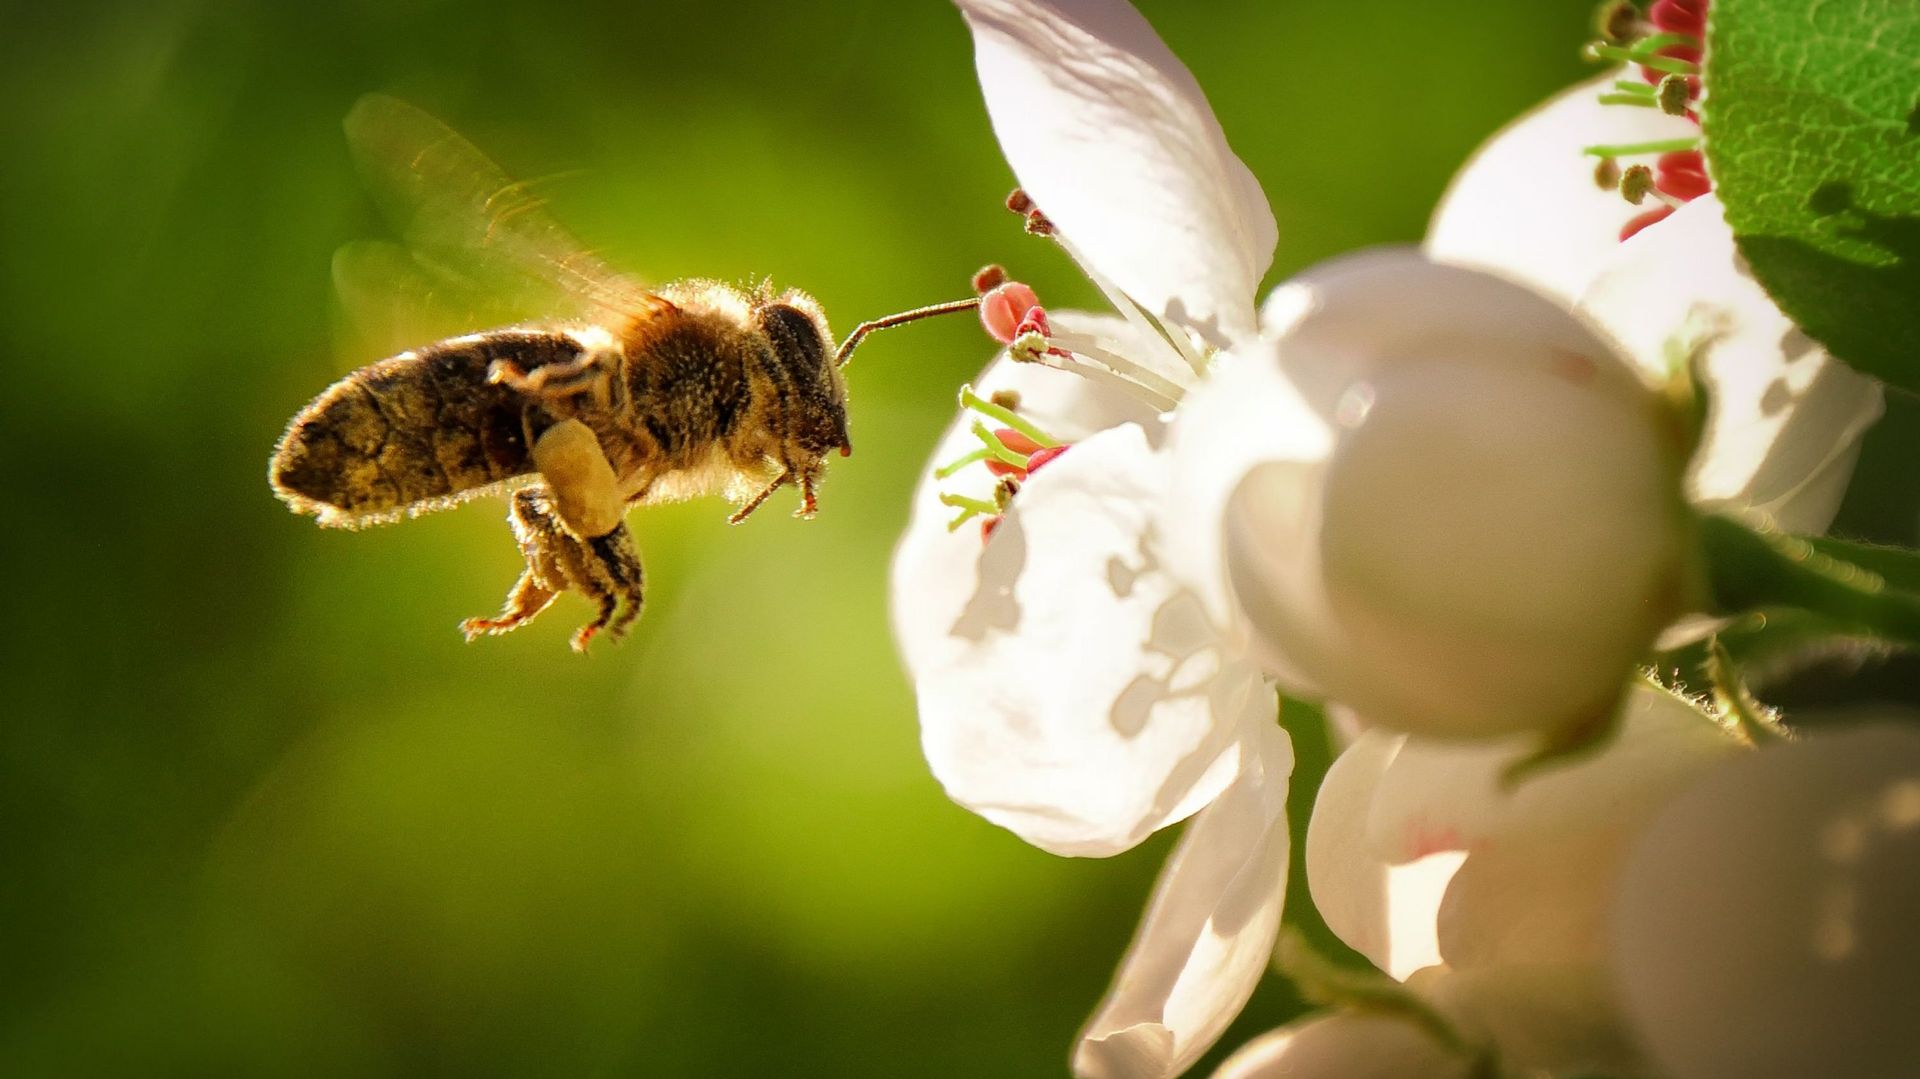 Abeilles et autres pollinisateurs, indispensables pour la biodiversité ! Participez aux différentes actions proposées par Adalia2.0